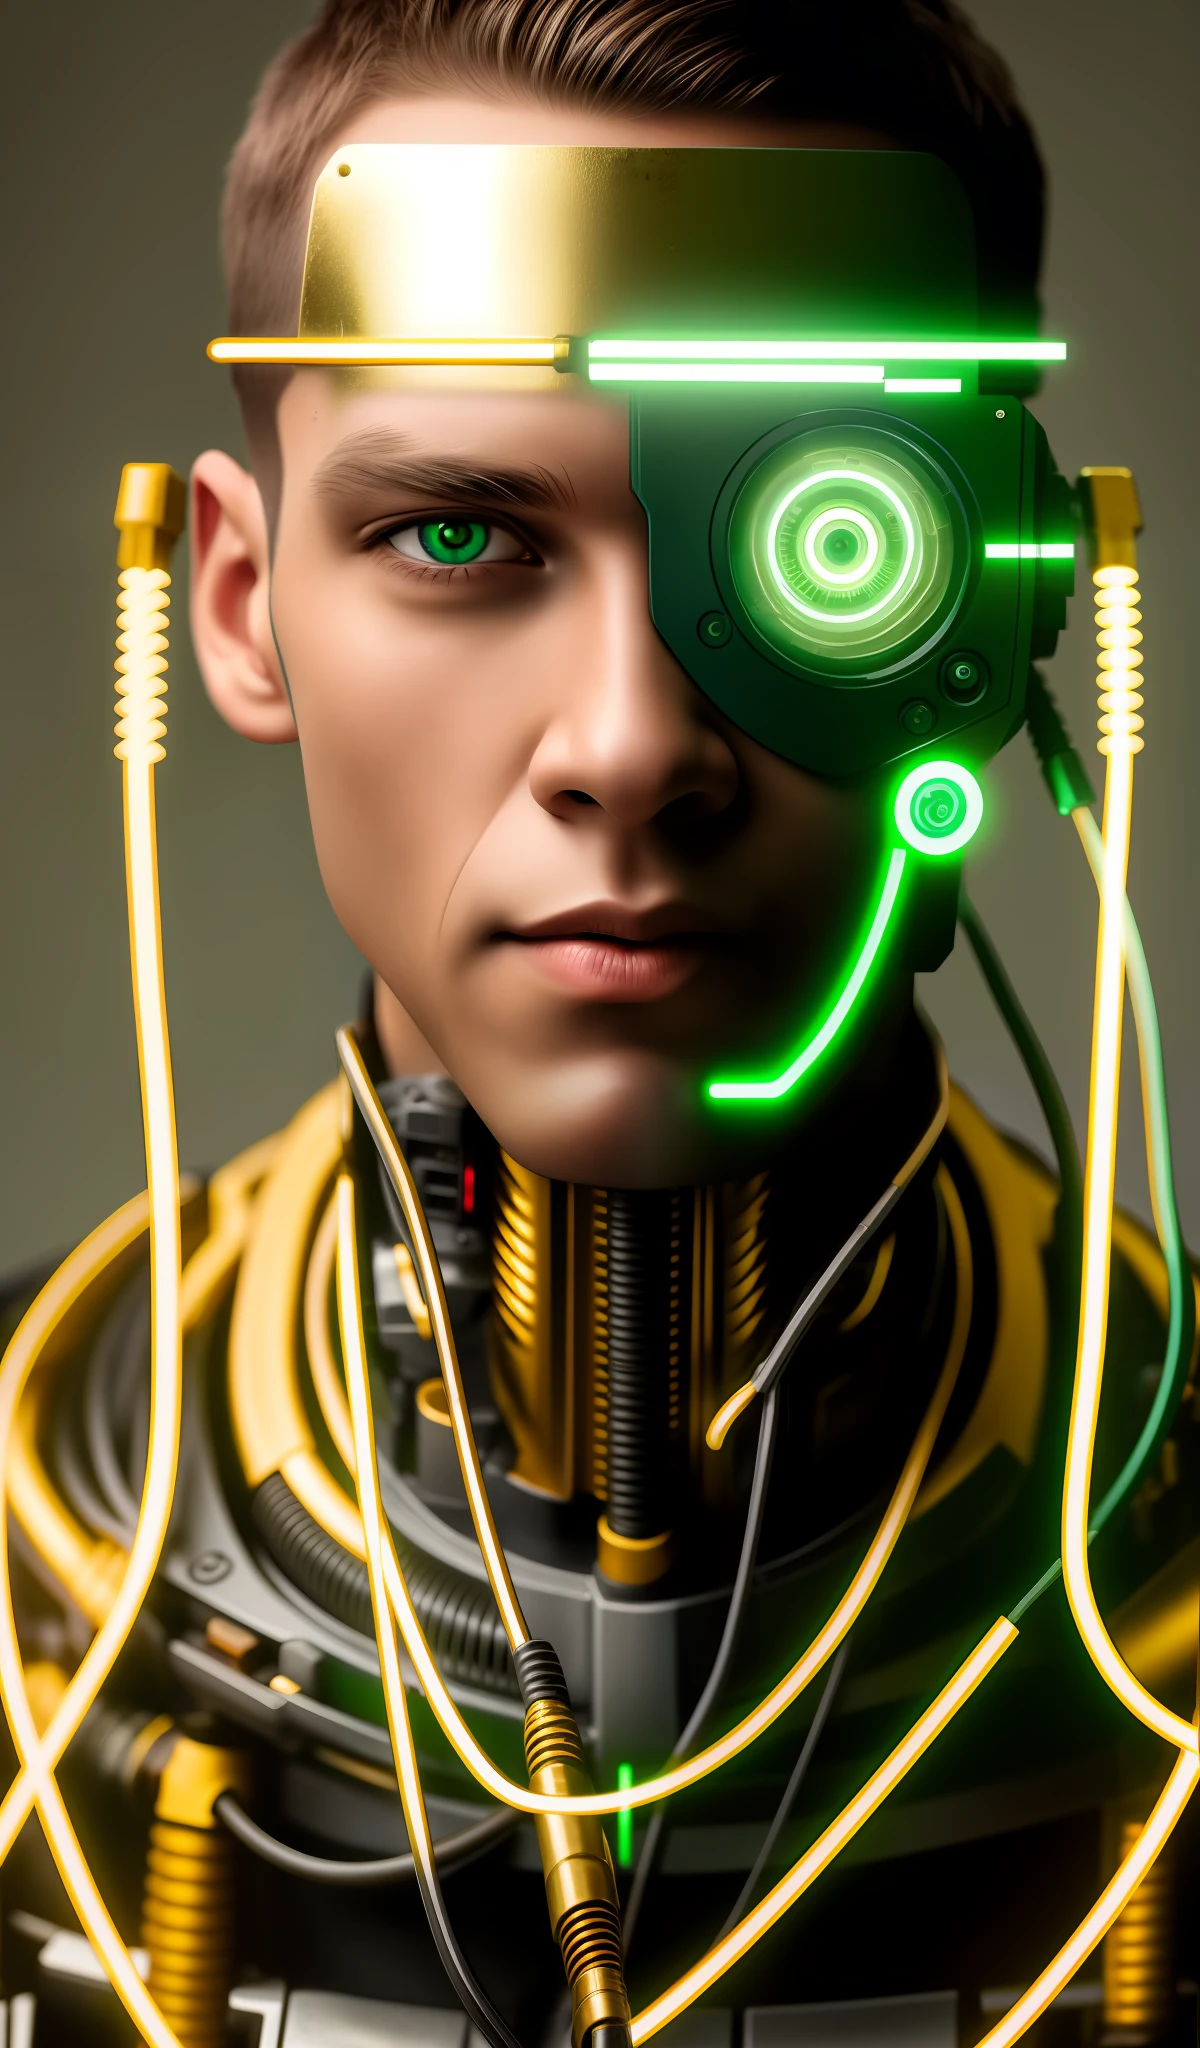 機器人中景, 全頭, 綠眼睛, 工作服, 模特兒臉, 裸露的電線, 金油從生鏽的電線中逸出